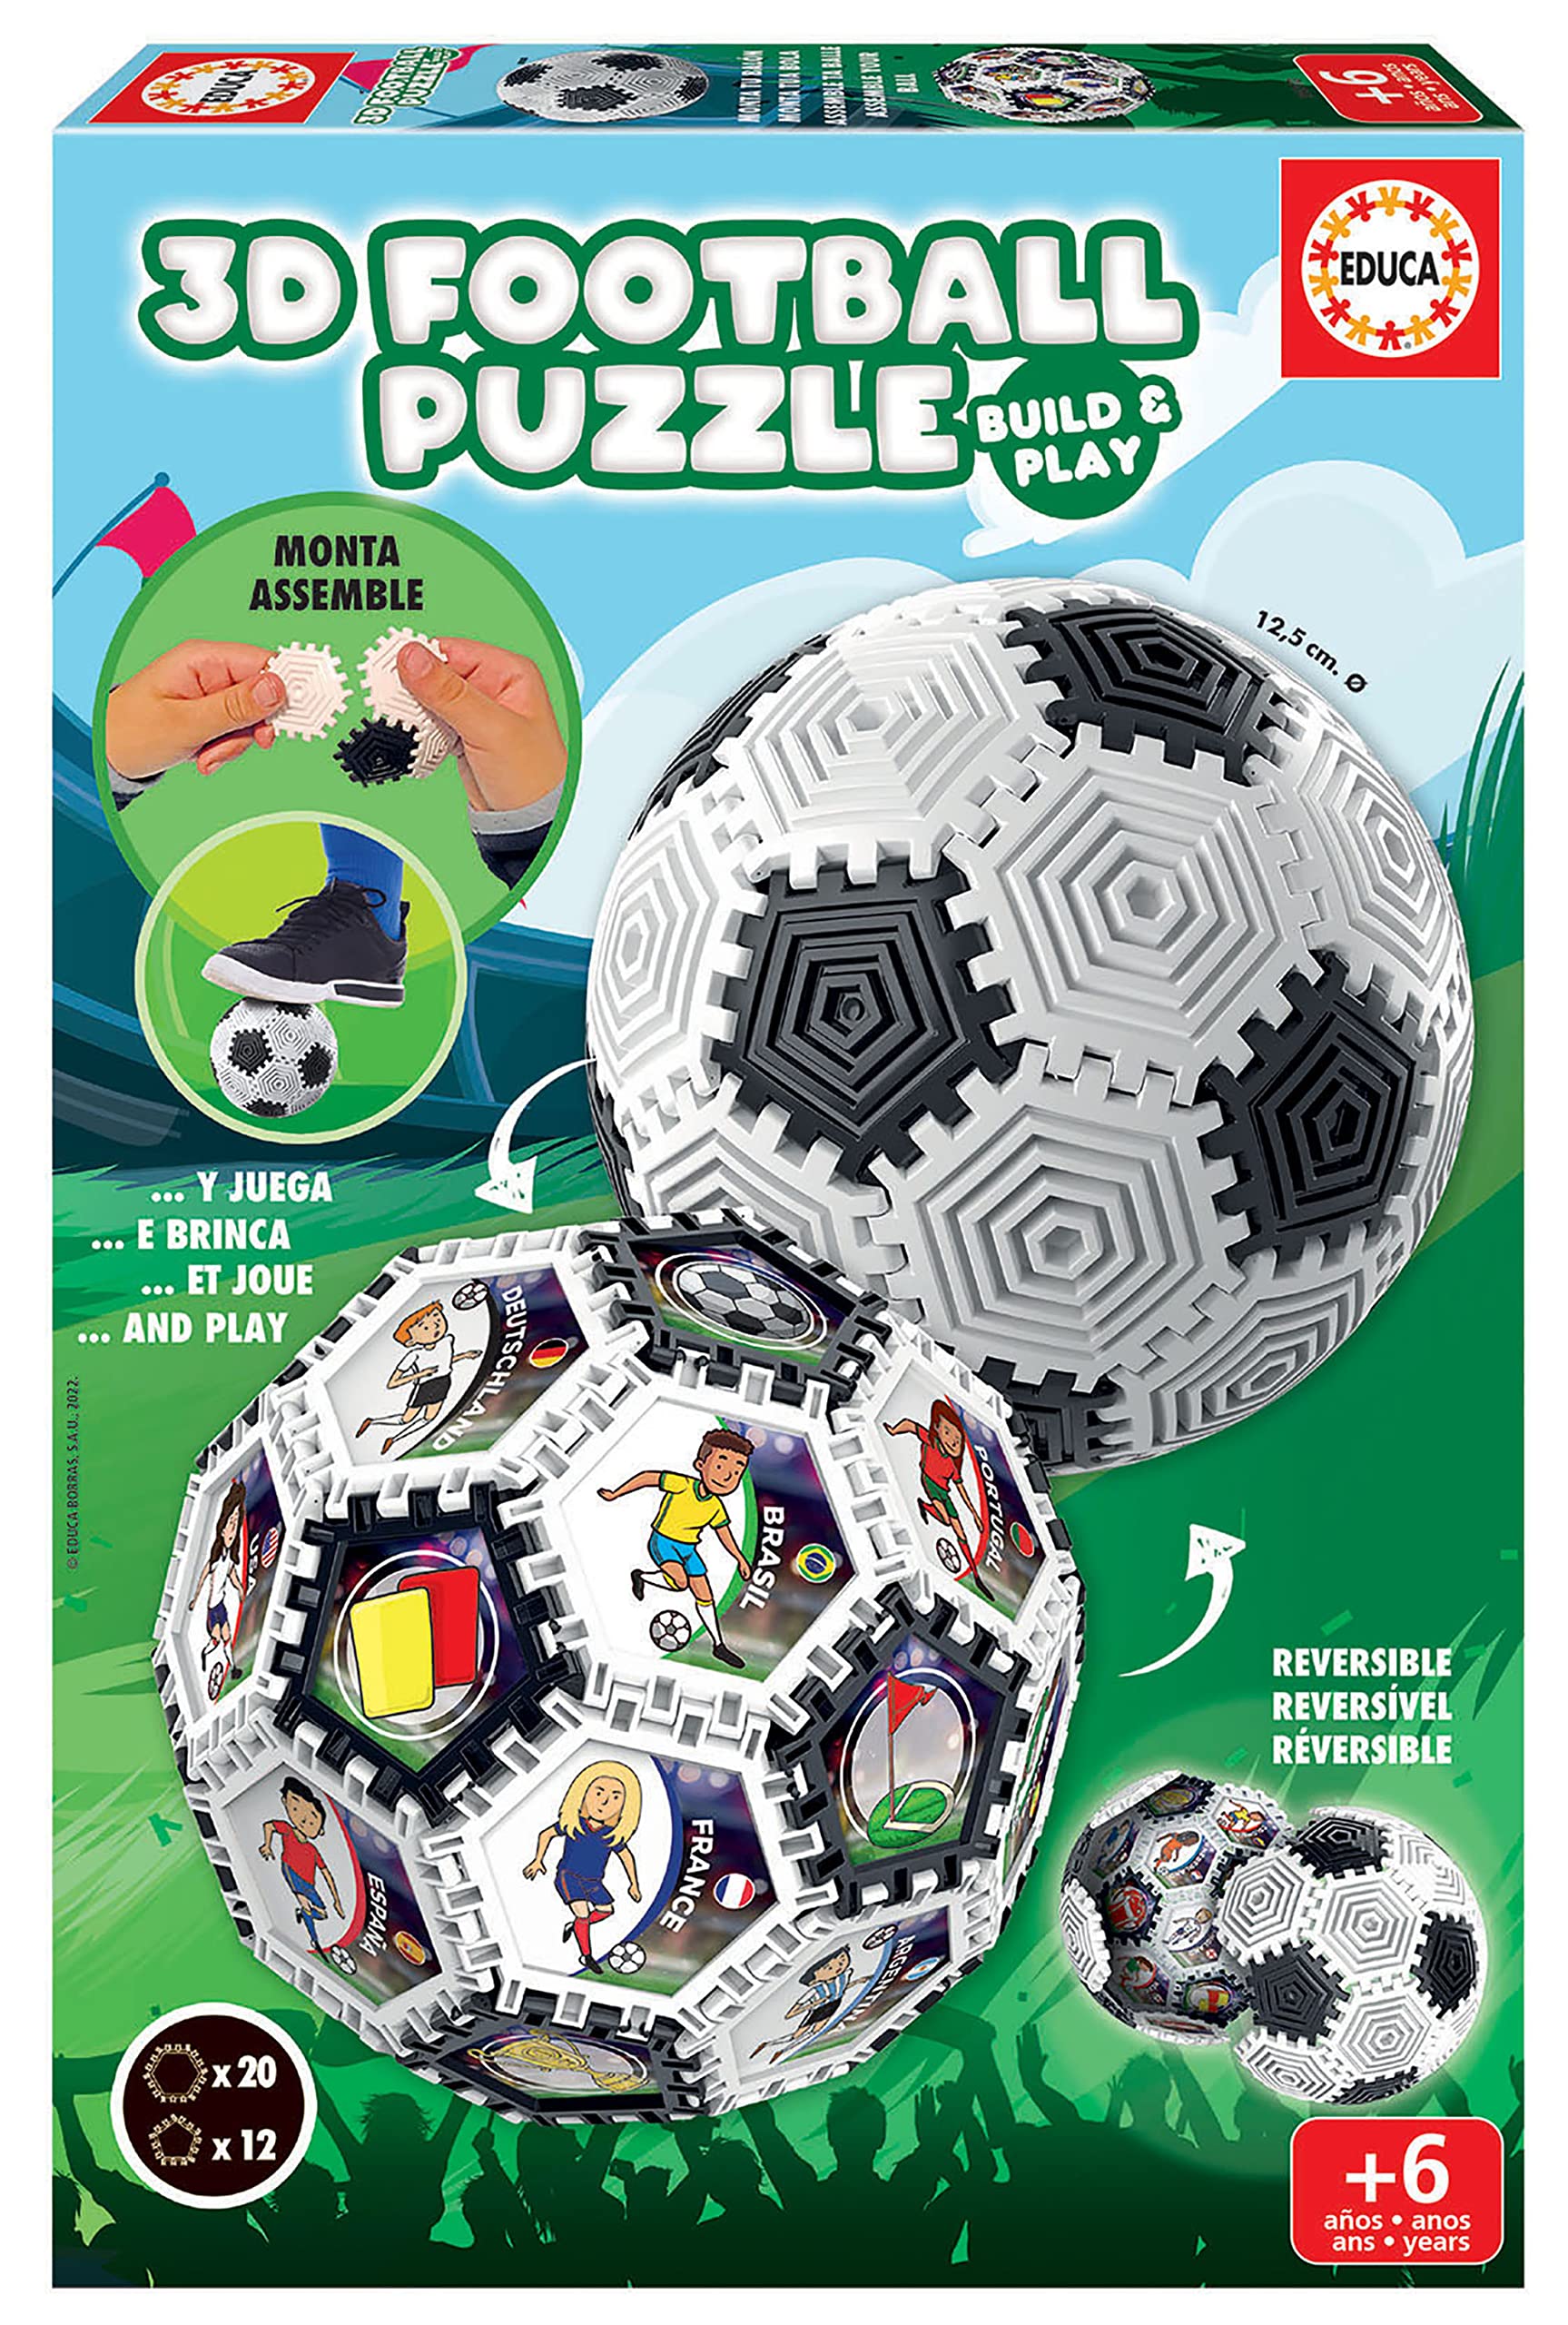 grand choix Educa - Puzzle Ball 3D avec 32 pièces et avec lequel Vous Pouvez Jouer | Assembler différentes Formes; sphère, Bracelet, Diabolo, Tour et Bien Plus Encore | A partir de 6 Ans (19210) 0F2Nin58w bien vendre